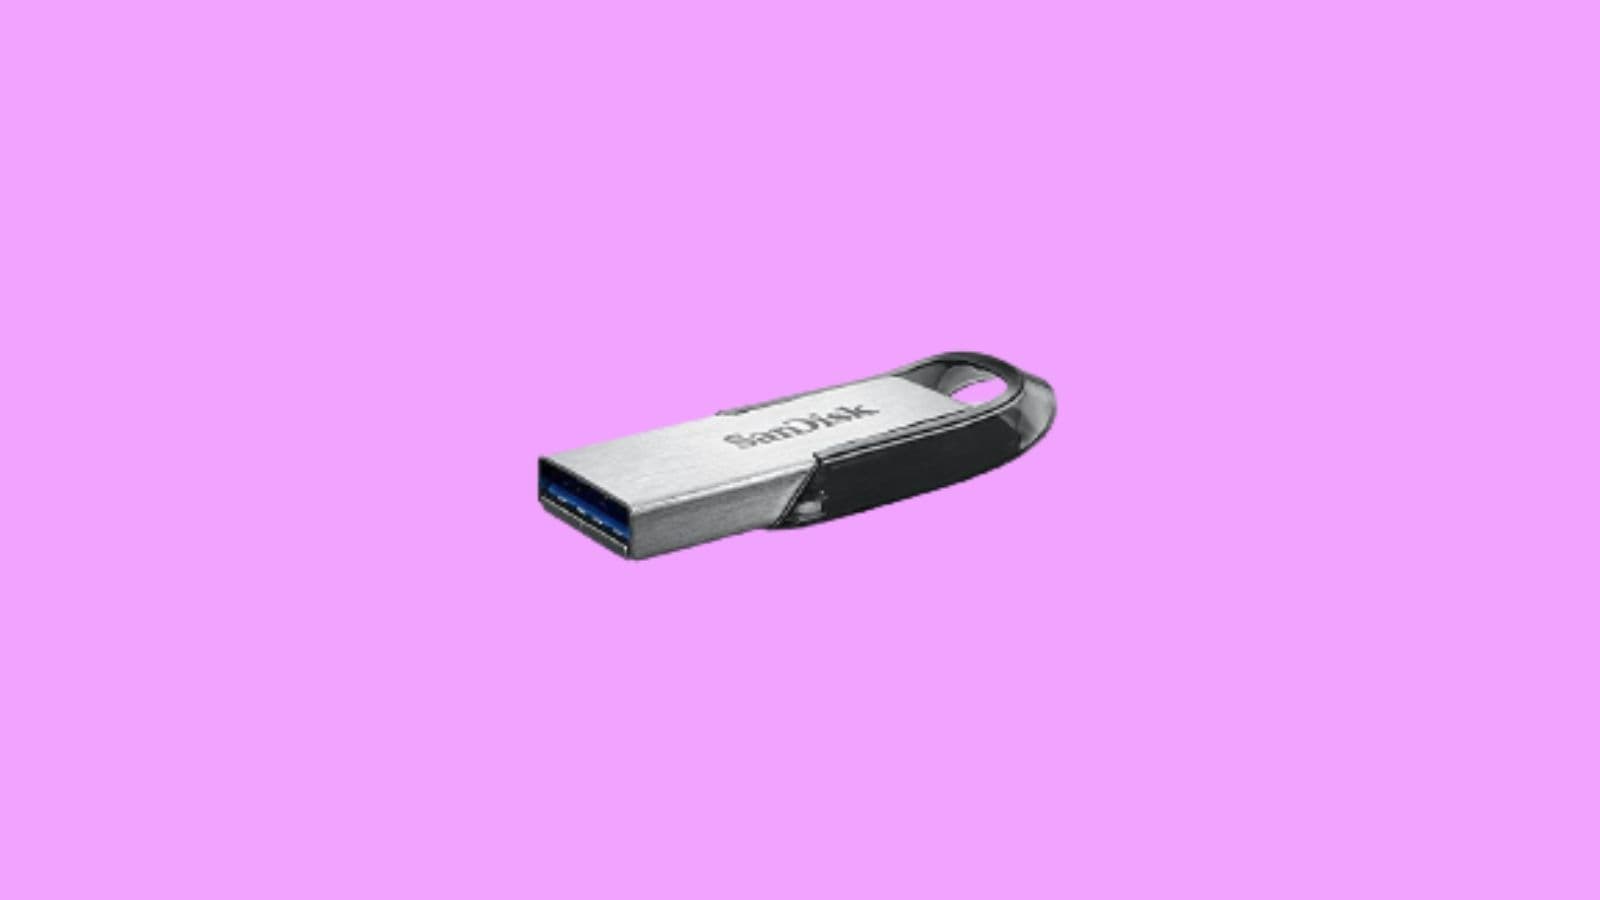 Ten najwyższej jakości klucz USB SanDisk można znaleźć w konkurencyjnej cenie na Amazon